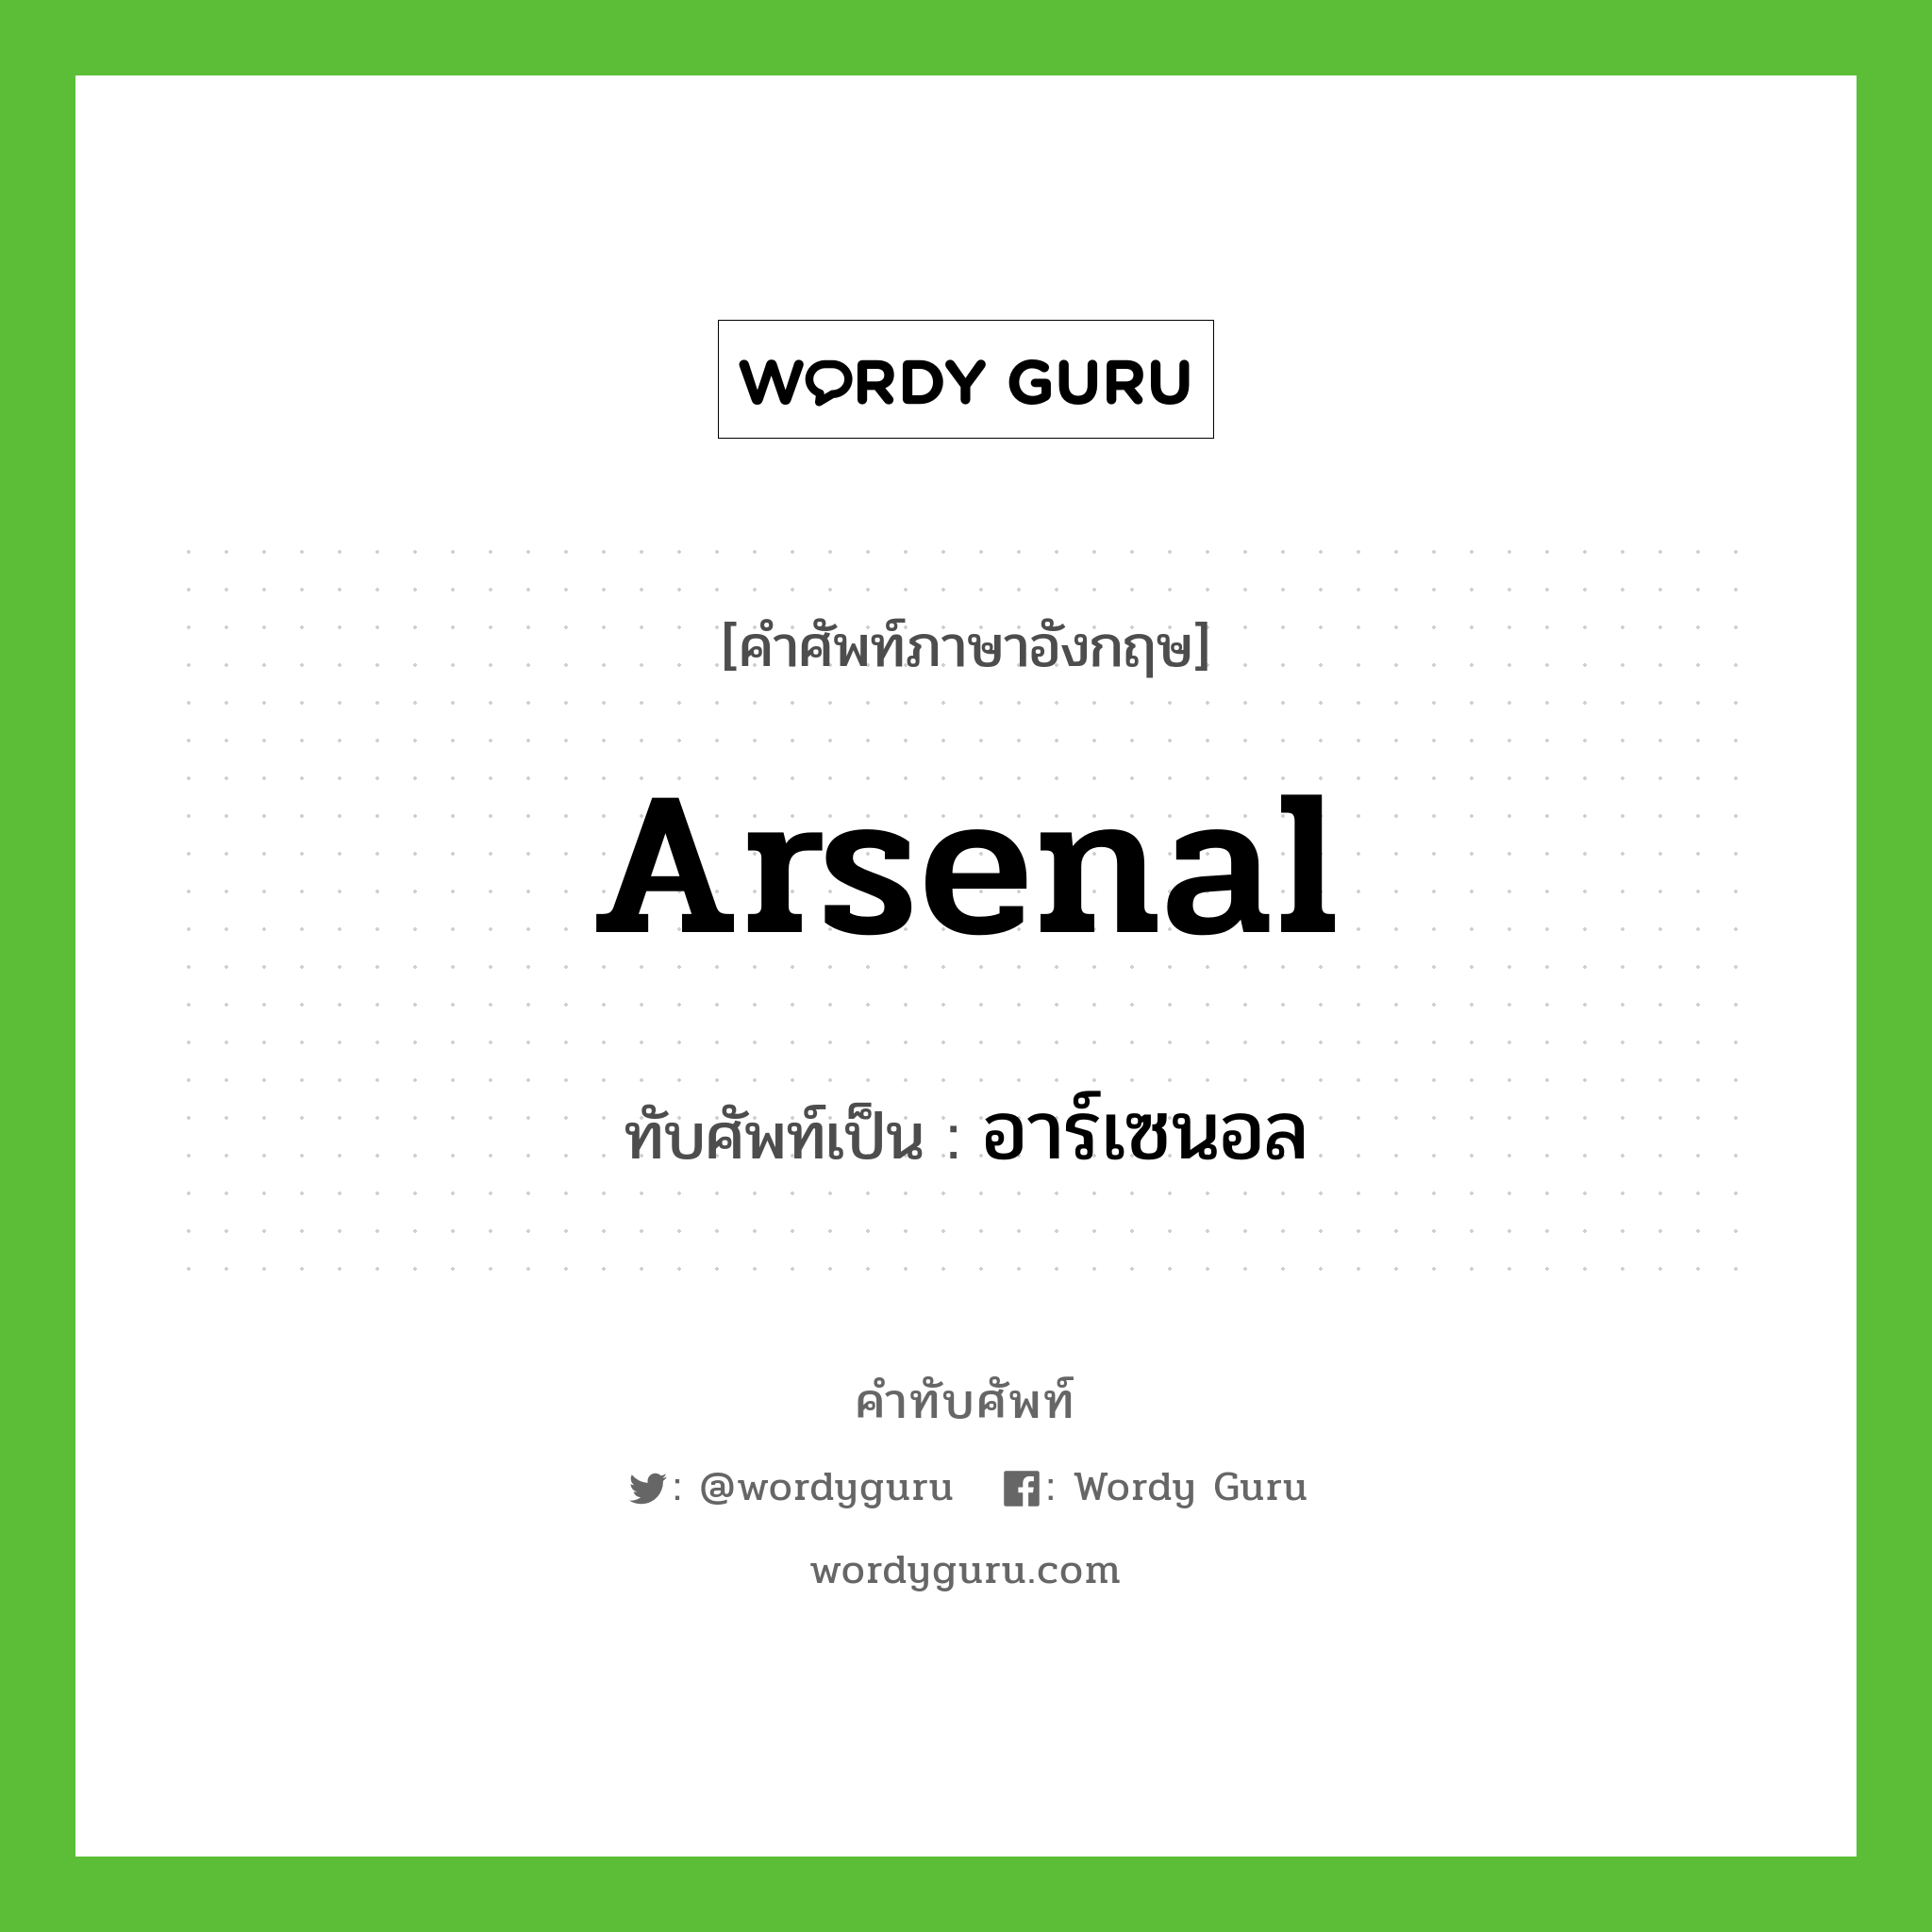 Arsenal เขียนเป็นคำไทยว่าอะไร?, คำศัพท์ภาษาอังกฤษ Arsenal ทับศัพท์เป็น อาร์เซนอล